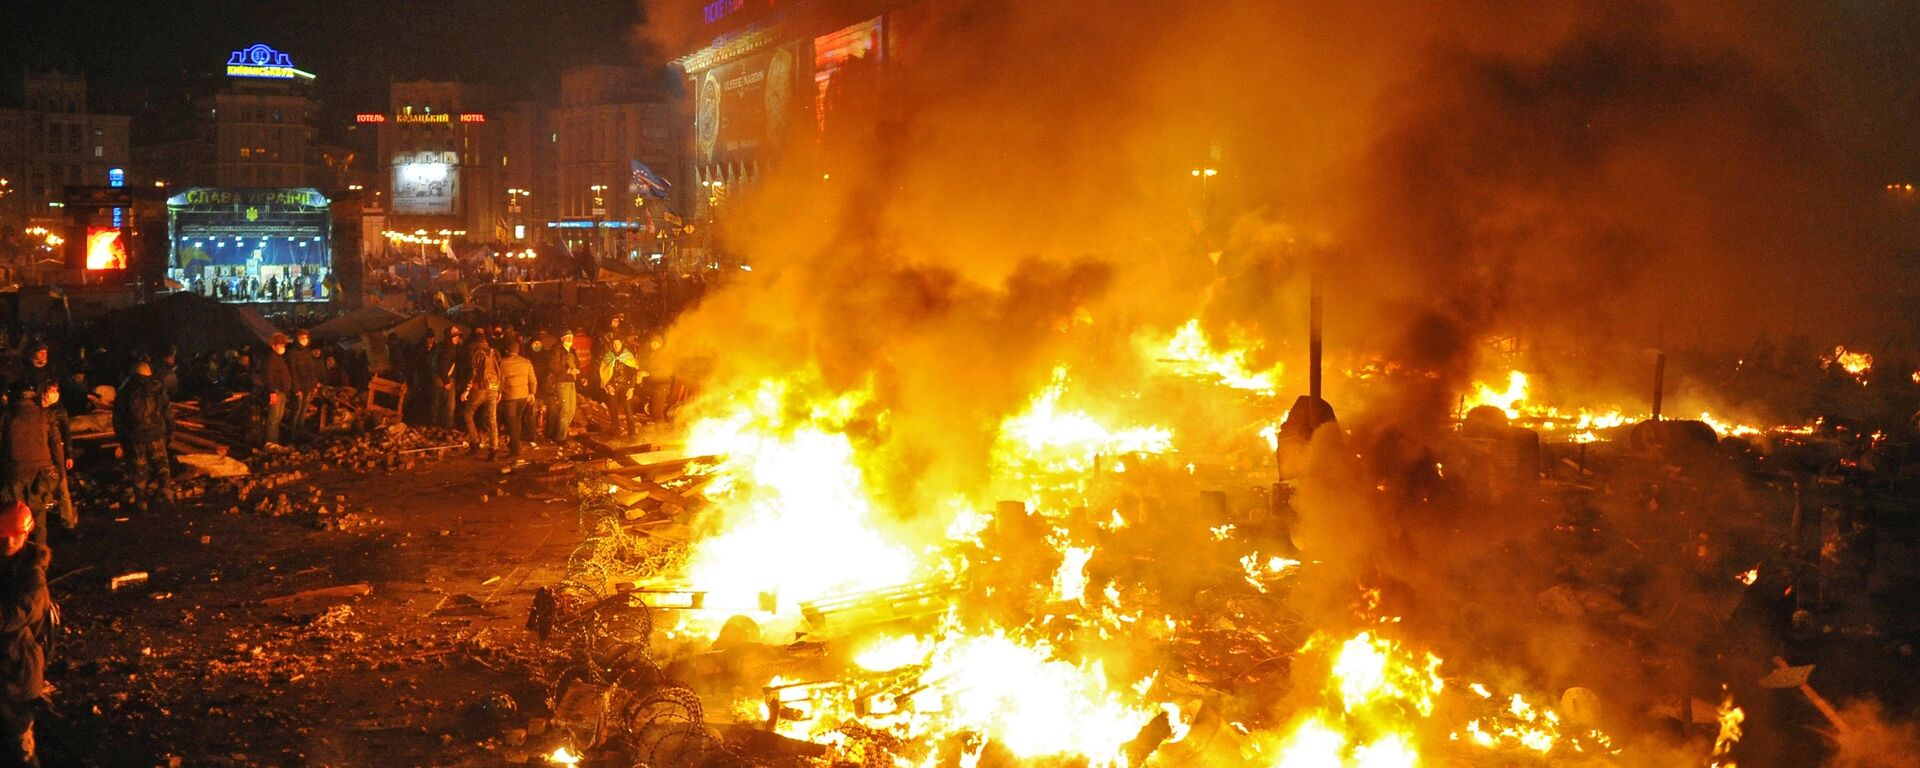 Đốt lửa và dựng lều trên quảng trường Maidan ở Kiev, nơi xảy ra xung đột giữa phái đối lập và cảnh sát. - Sputnik Việt Nam, 1920, 31.12.2021